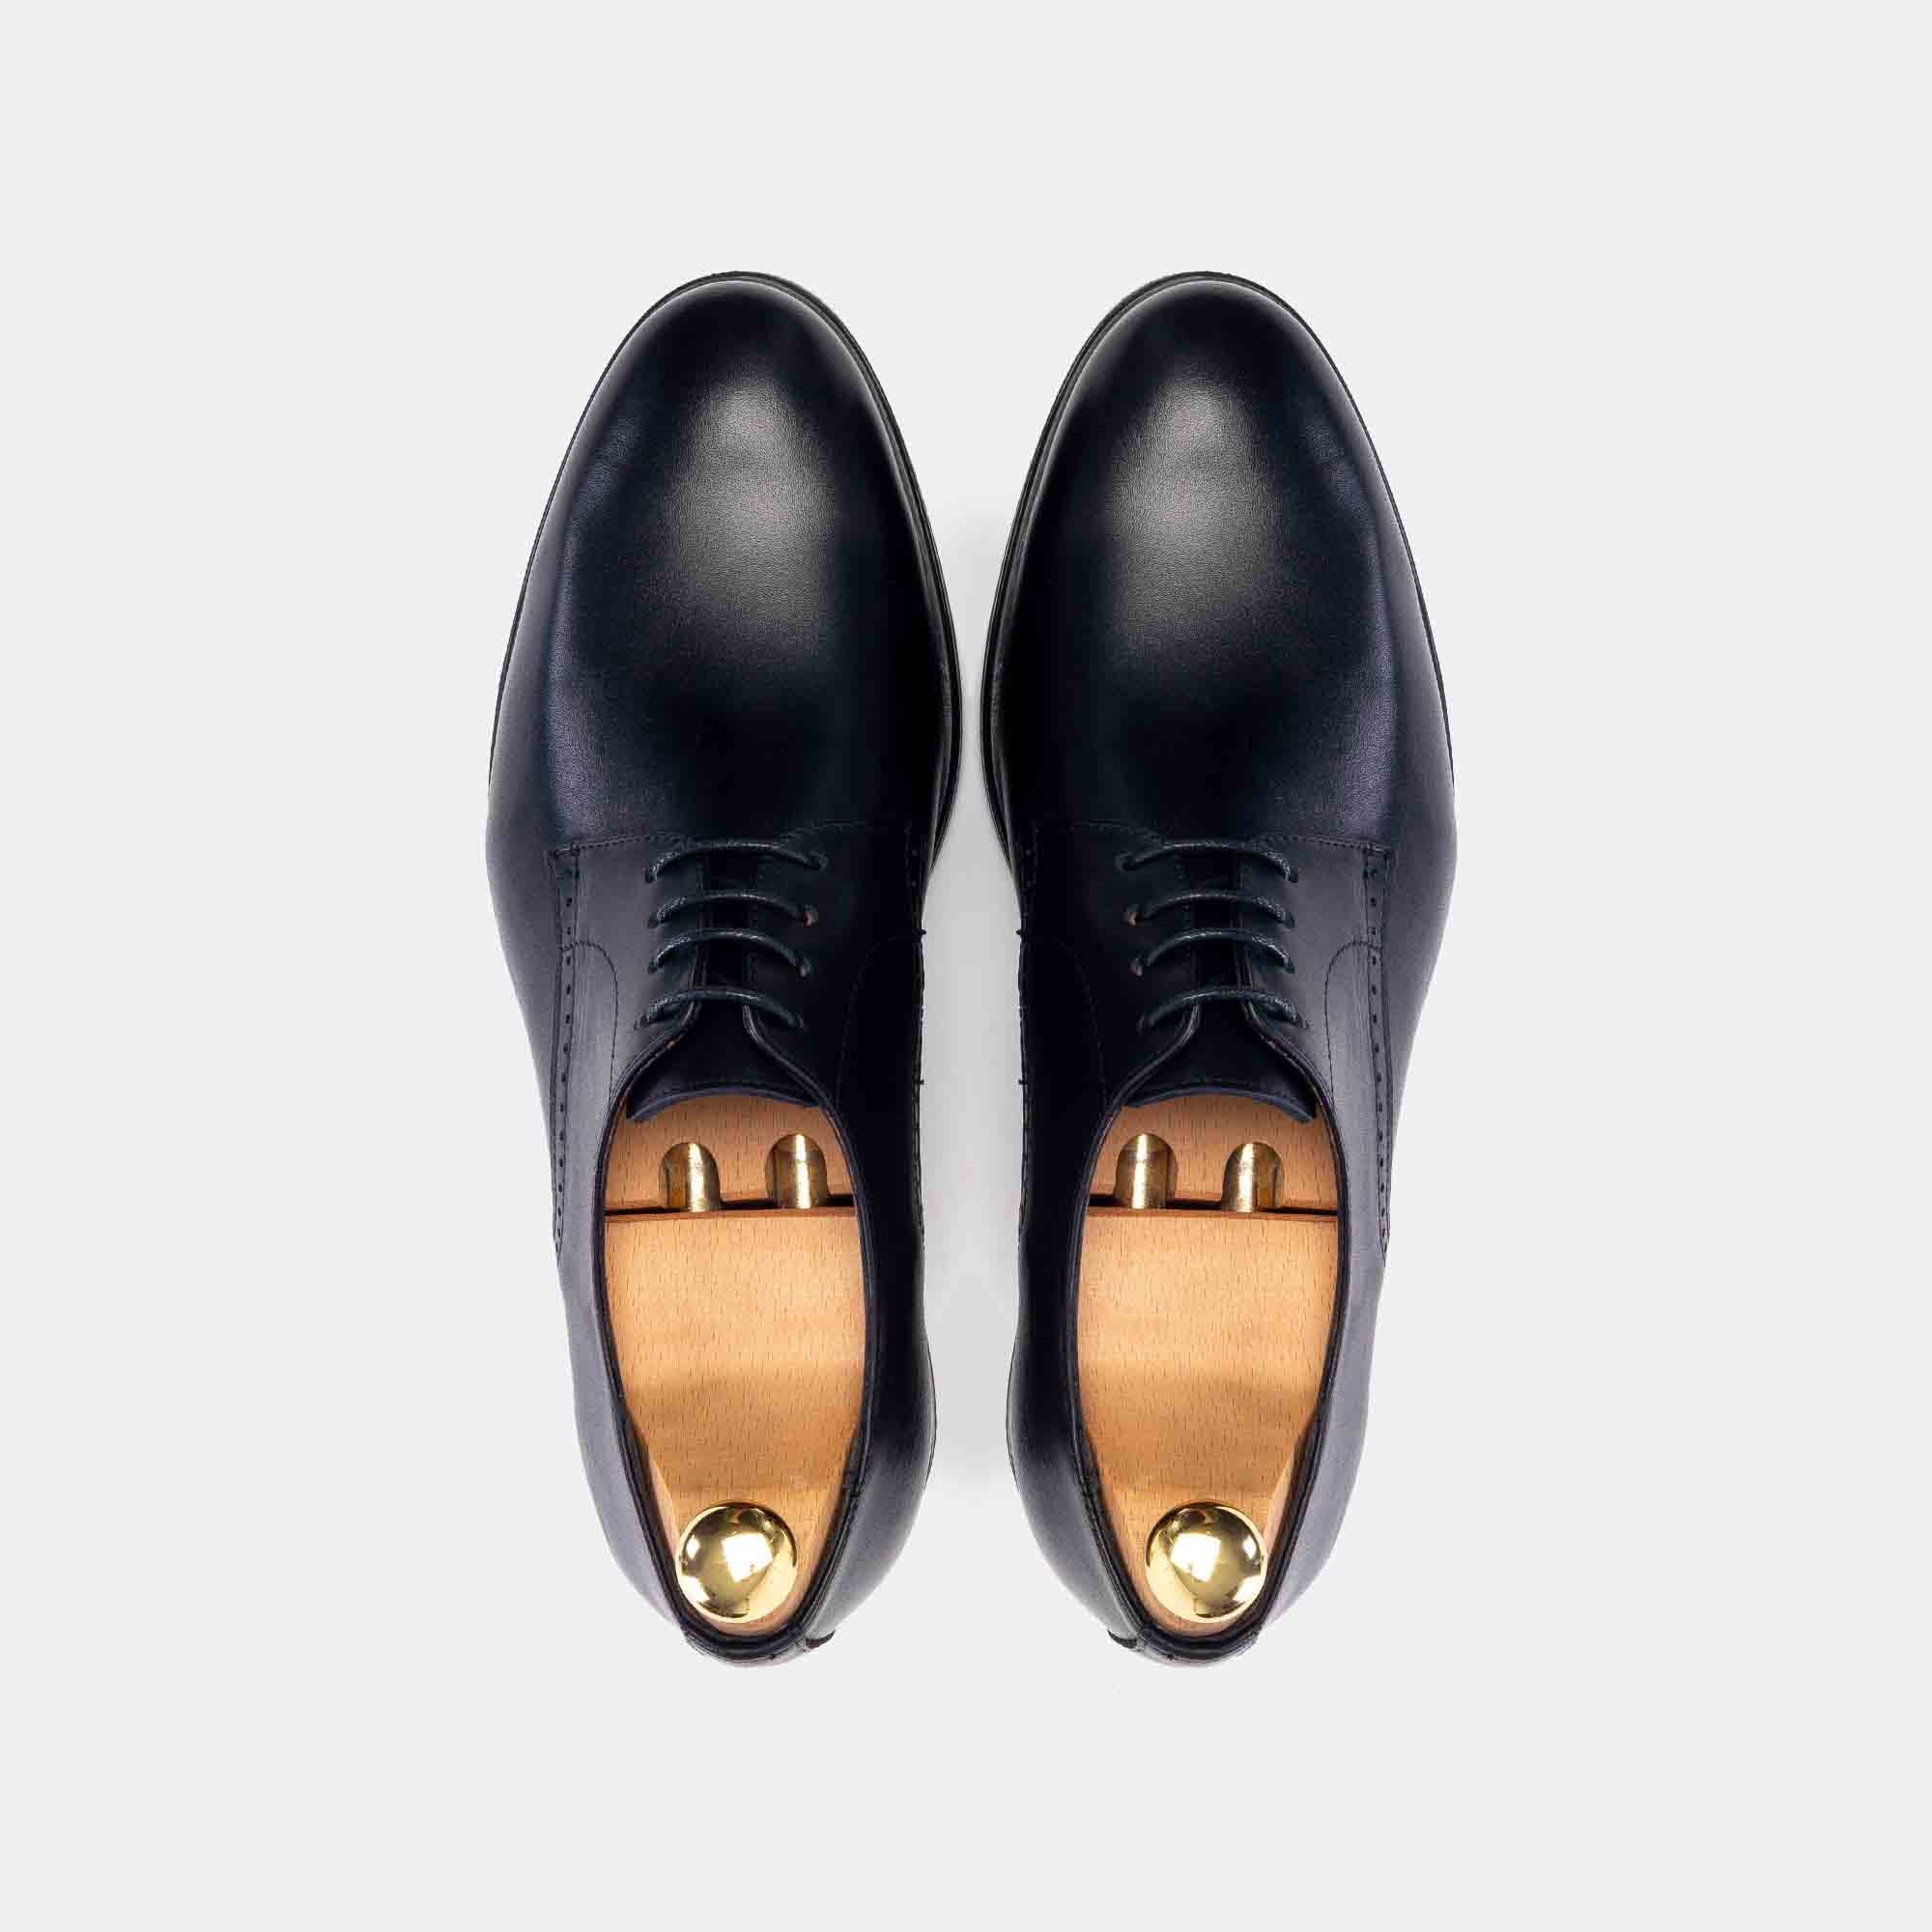 .5121 Chaussure cuir Noir